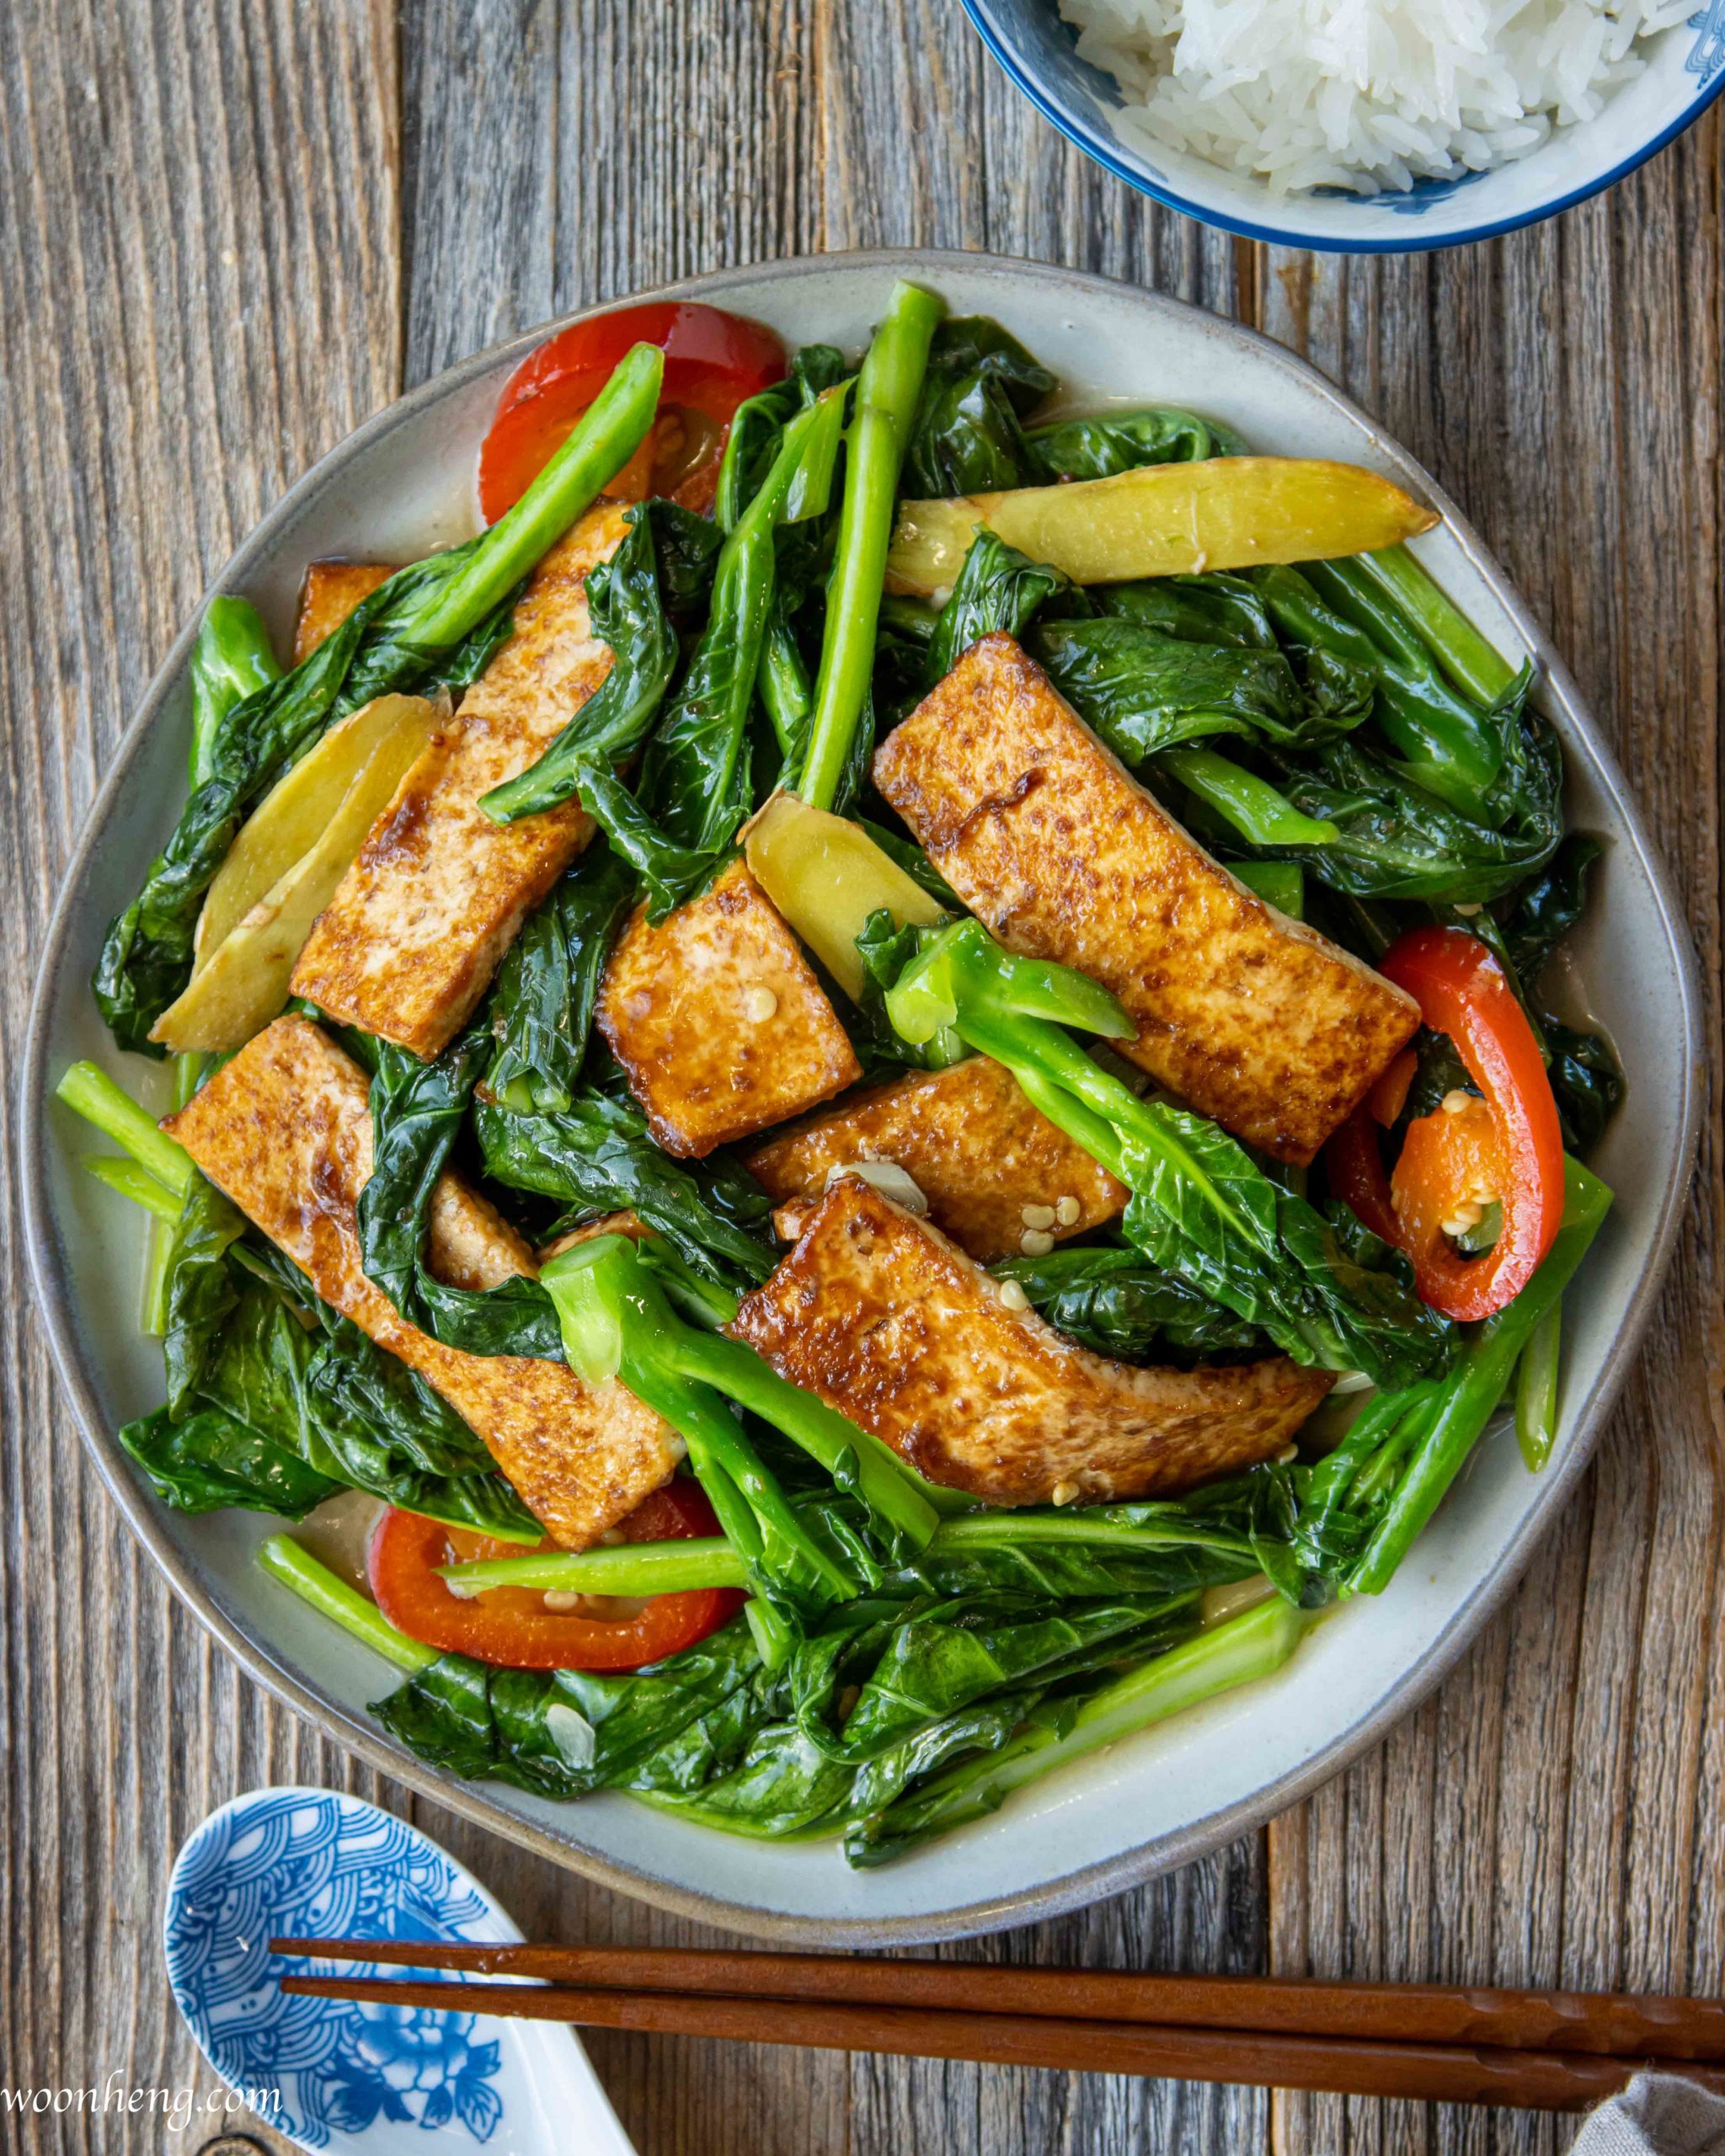 Easy Gai Lan (Chinese broccoli) with Tofu Stir-fry - WoonHeng